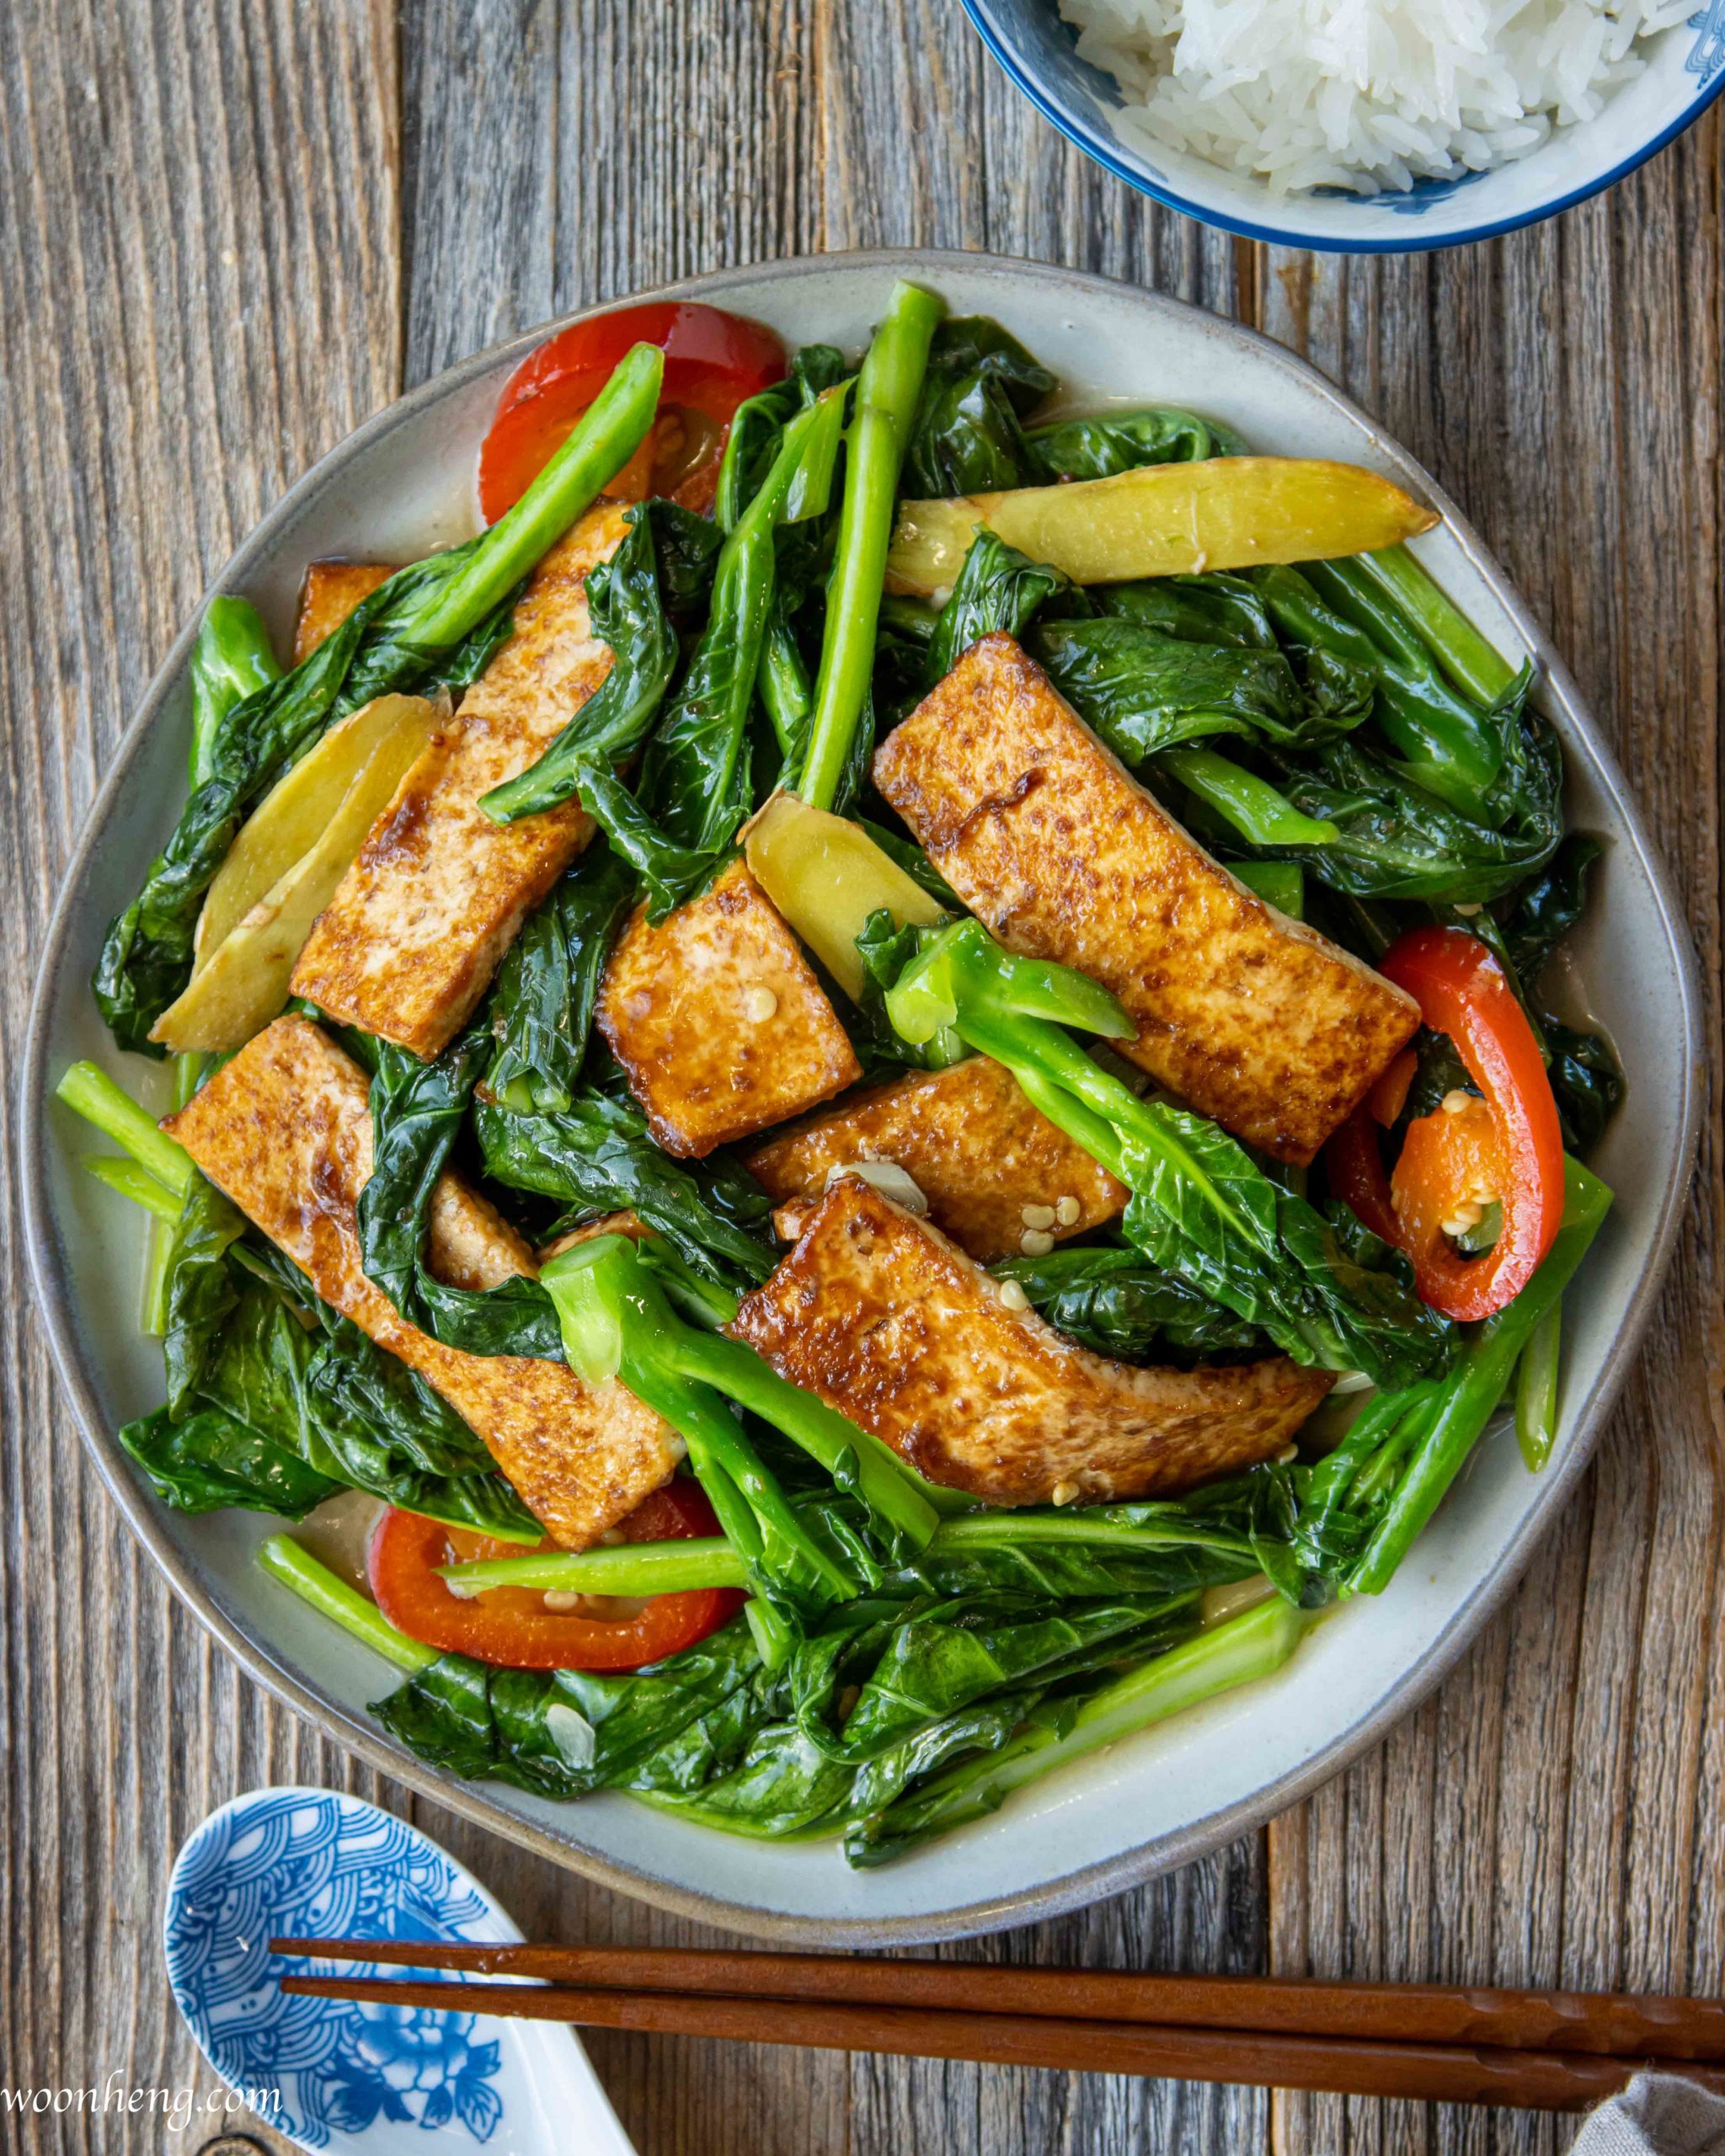 Easy Gai Lan (Chinese broccoli) with Tofu Stir-fry - WoonHeng